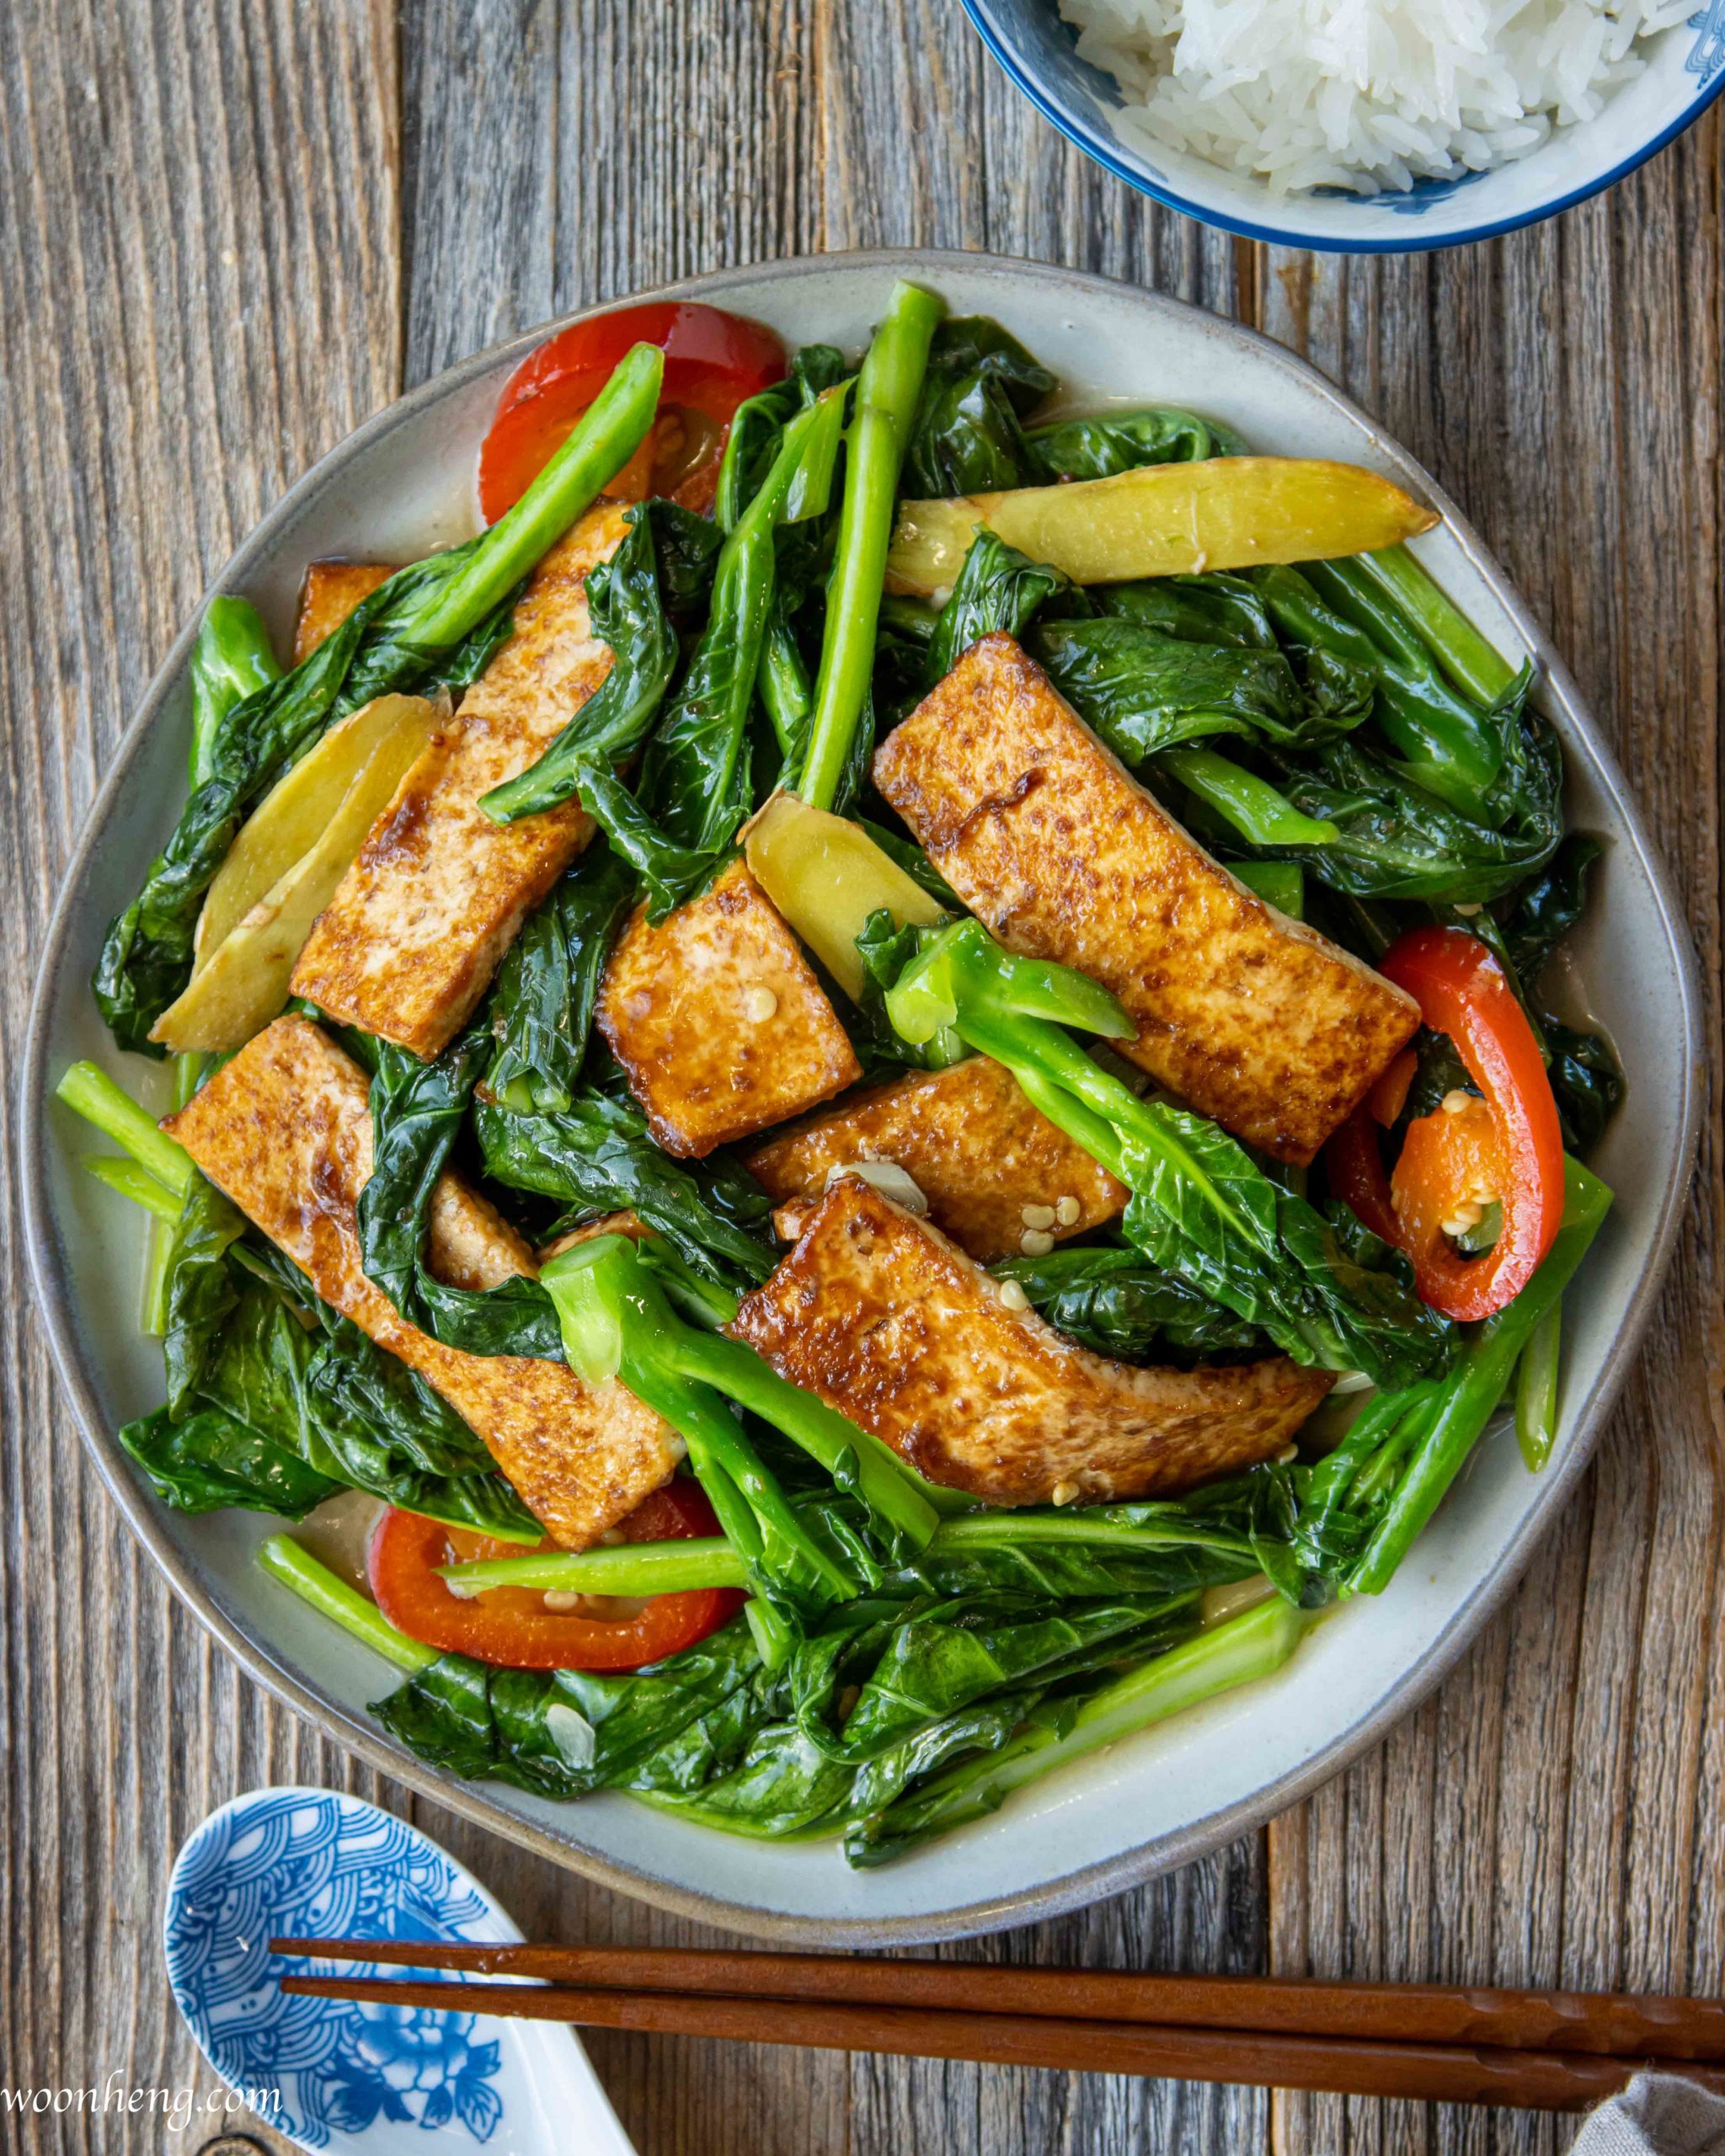 Easy Gai Lan (Chinese broccoli) with Tofu Stir-fry - WoonHeng